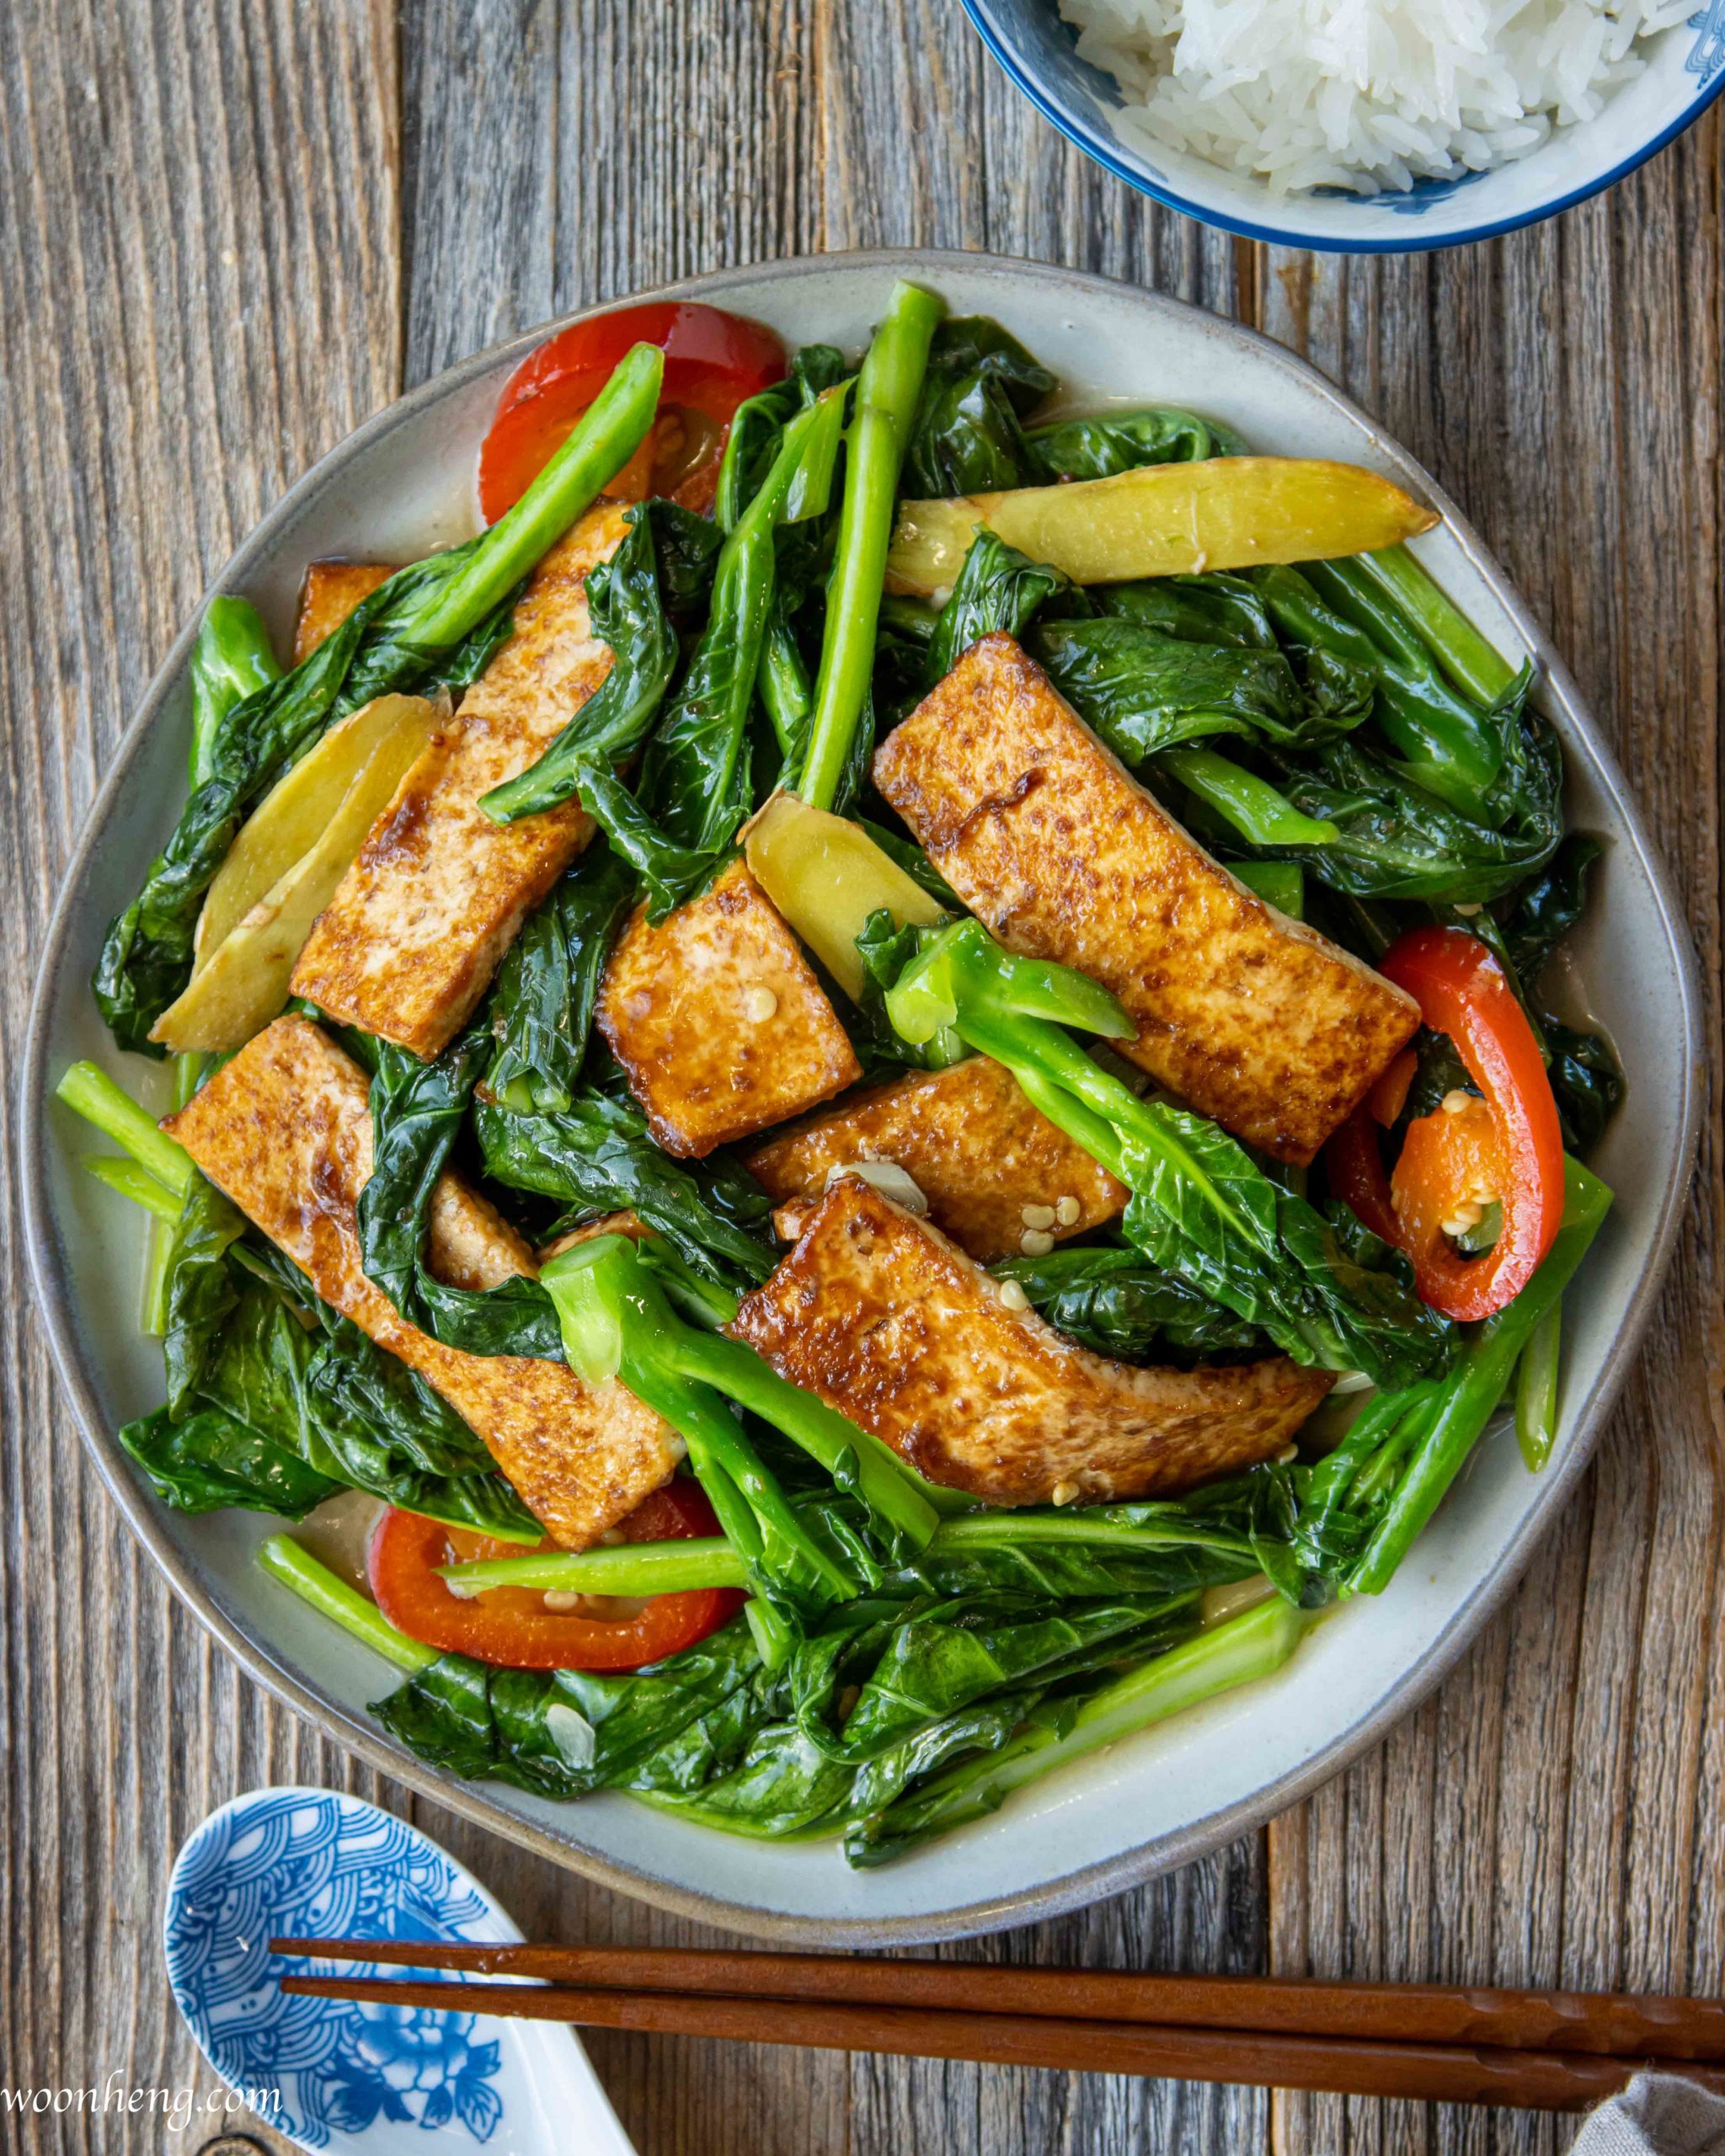 Easy Gai Lan (Chinese broccoli) with Tofu Stir-fry - WoonHeng